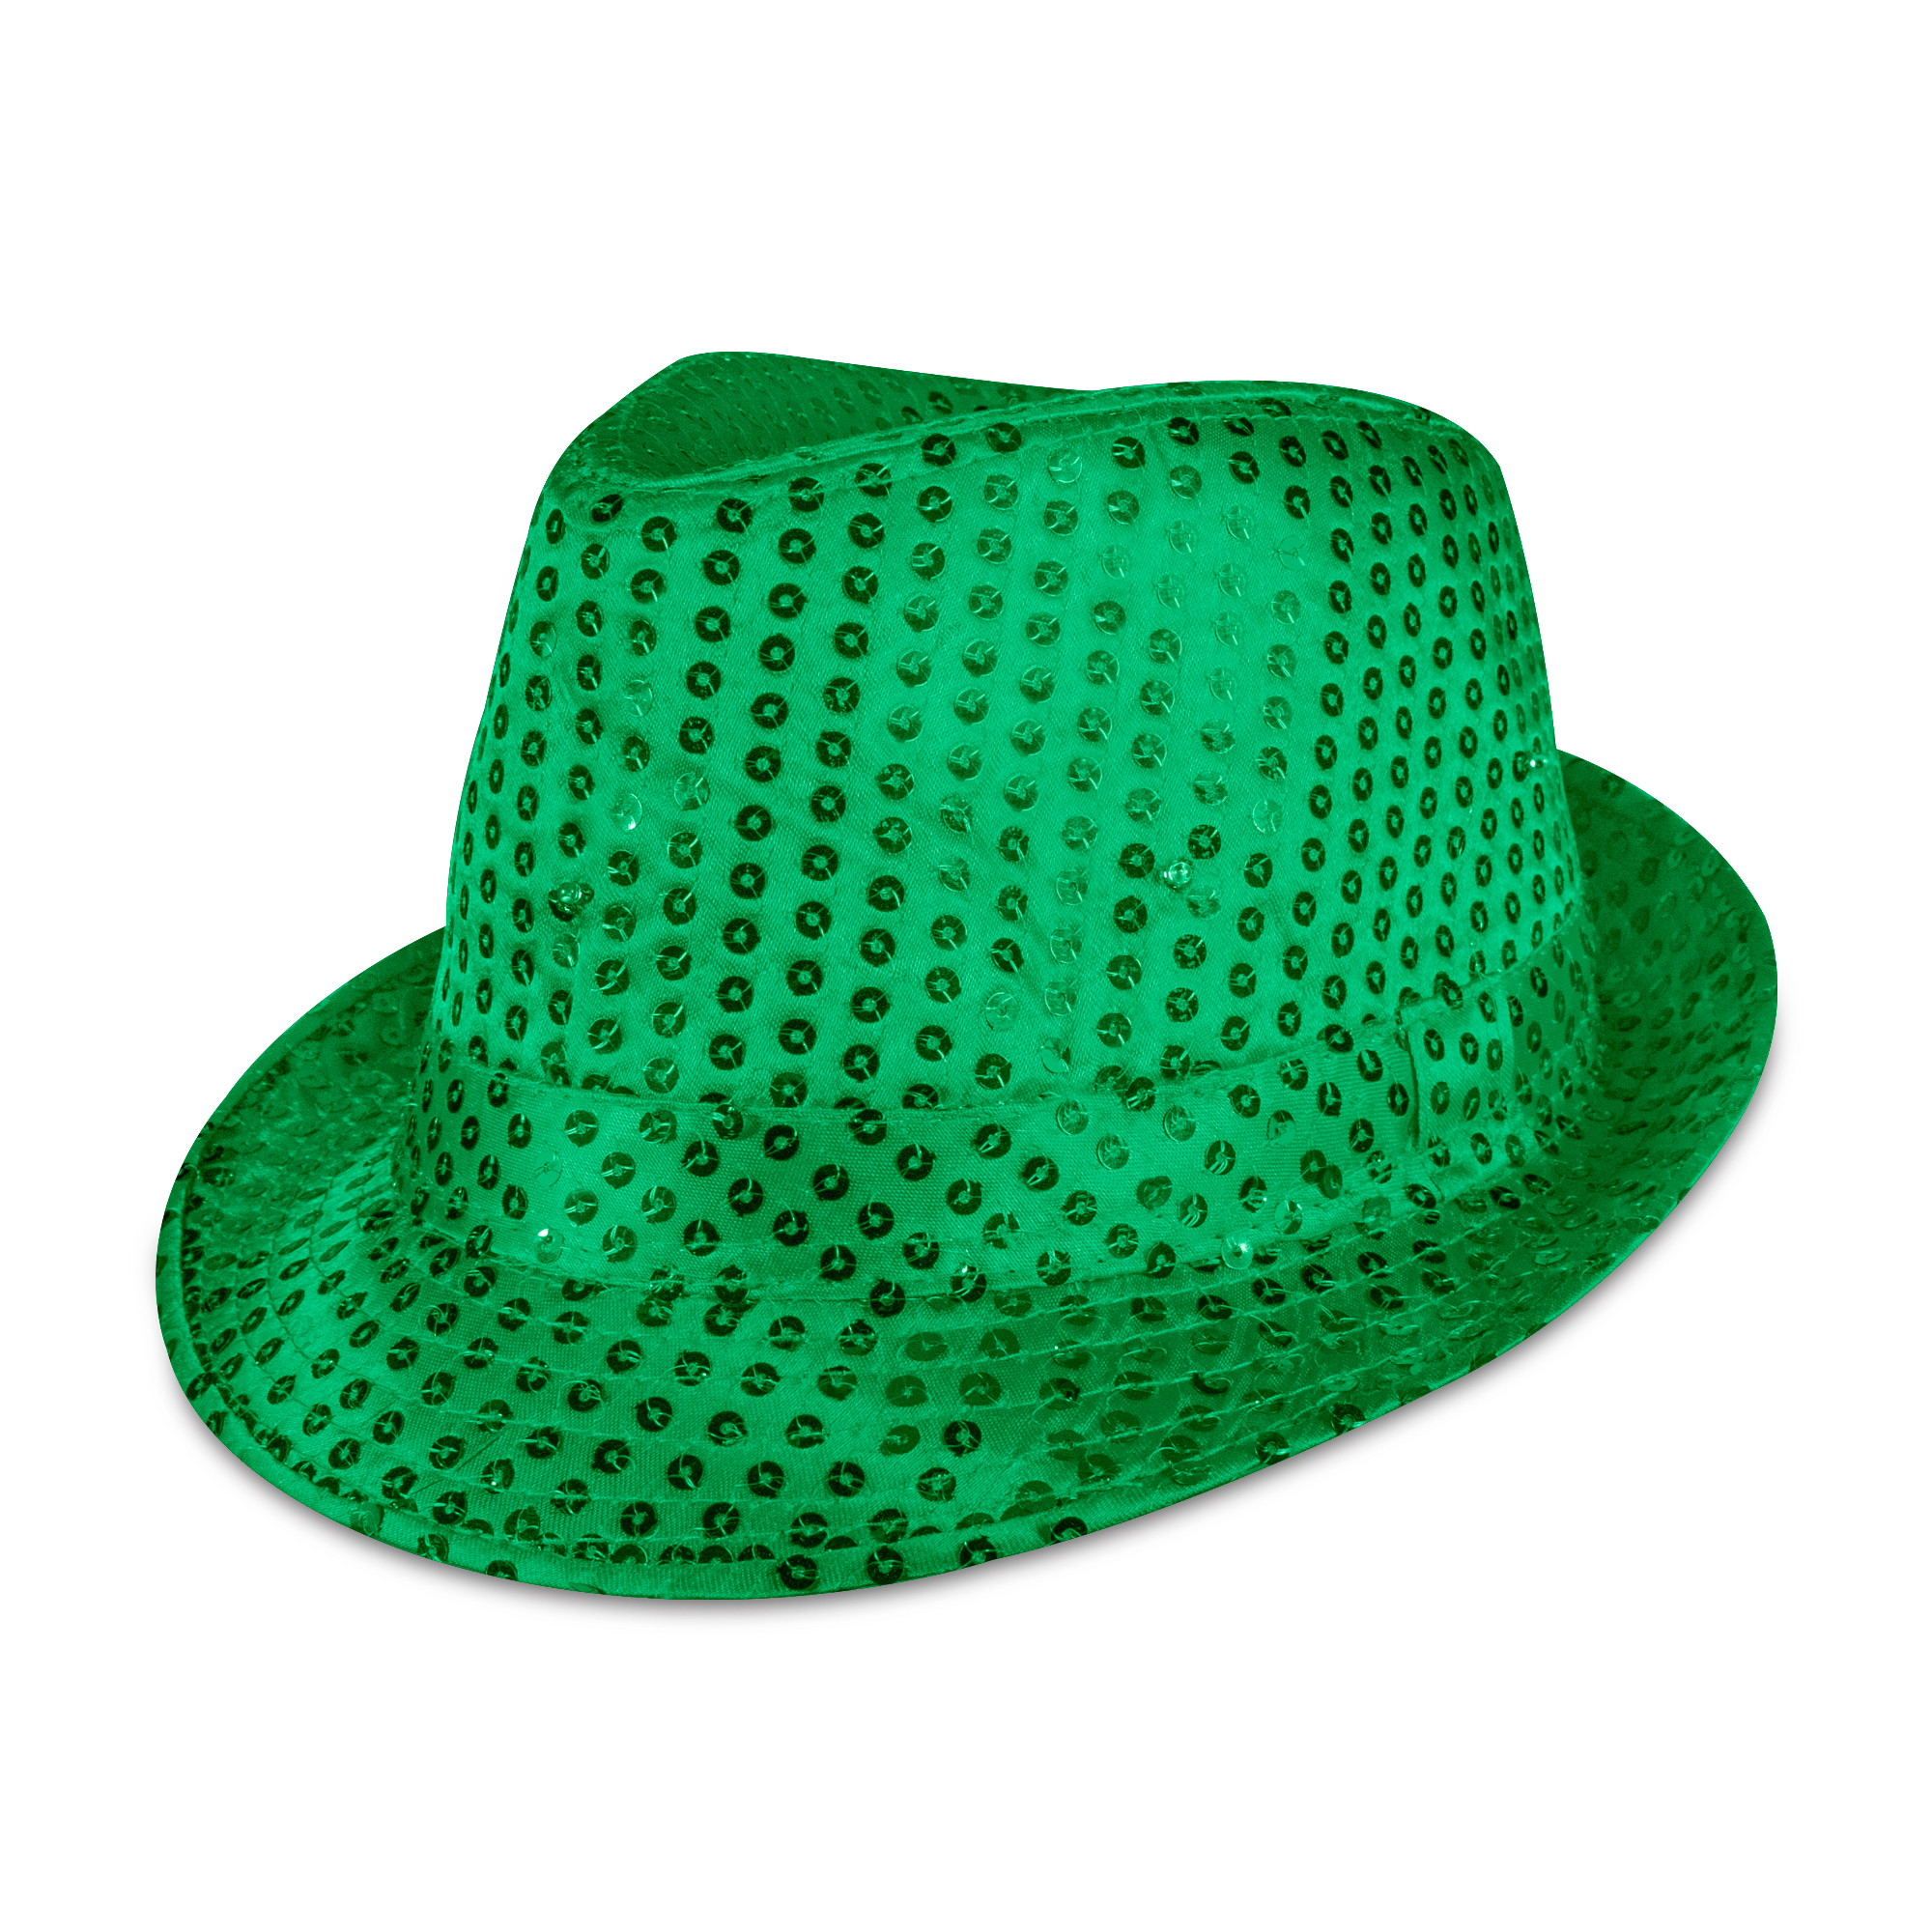 green led hat light